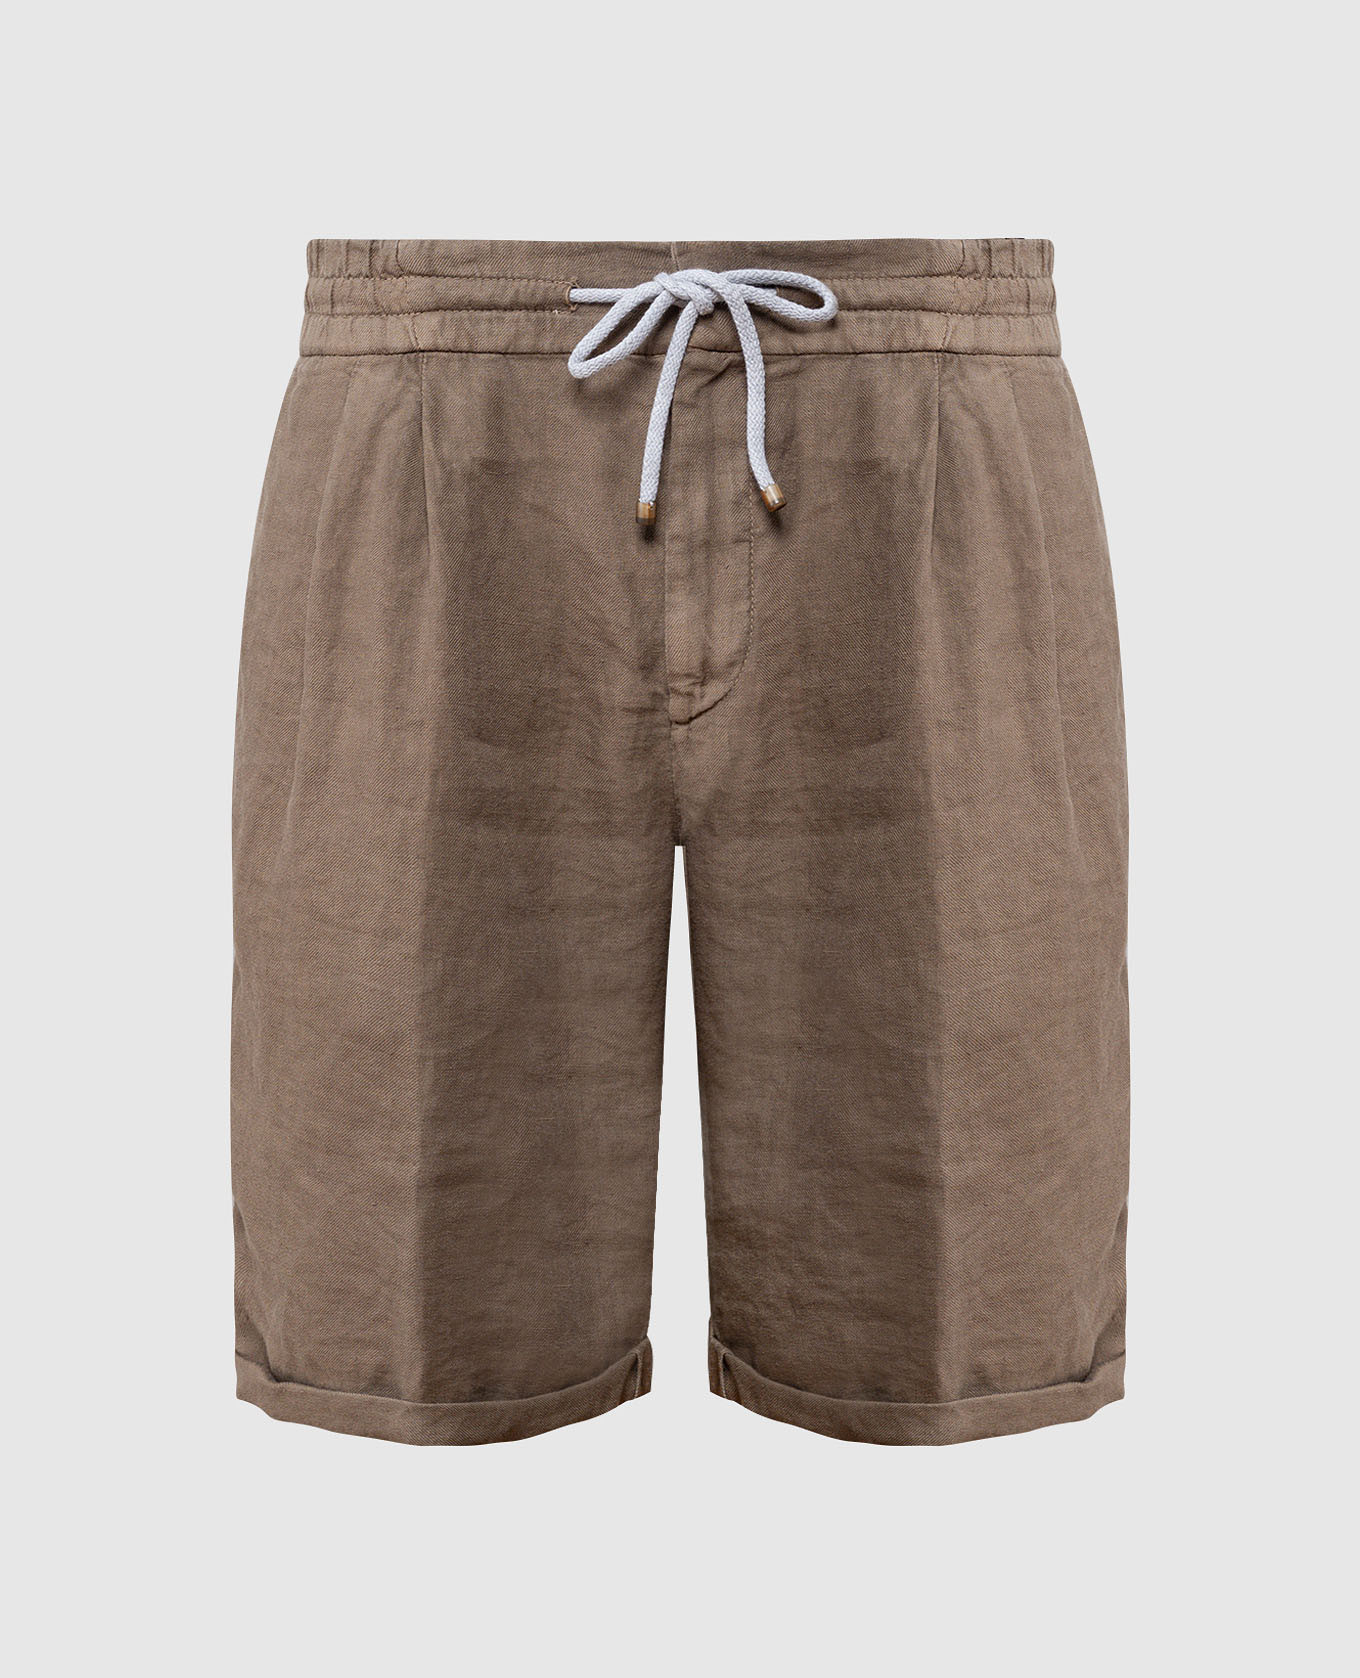 Beige linen shorts